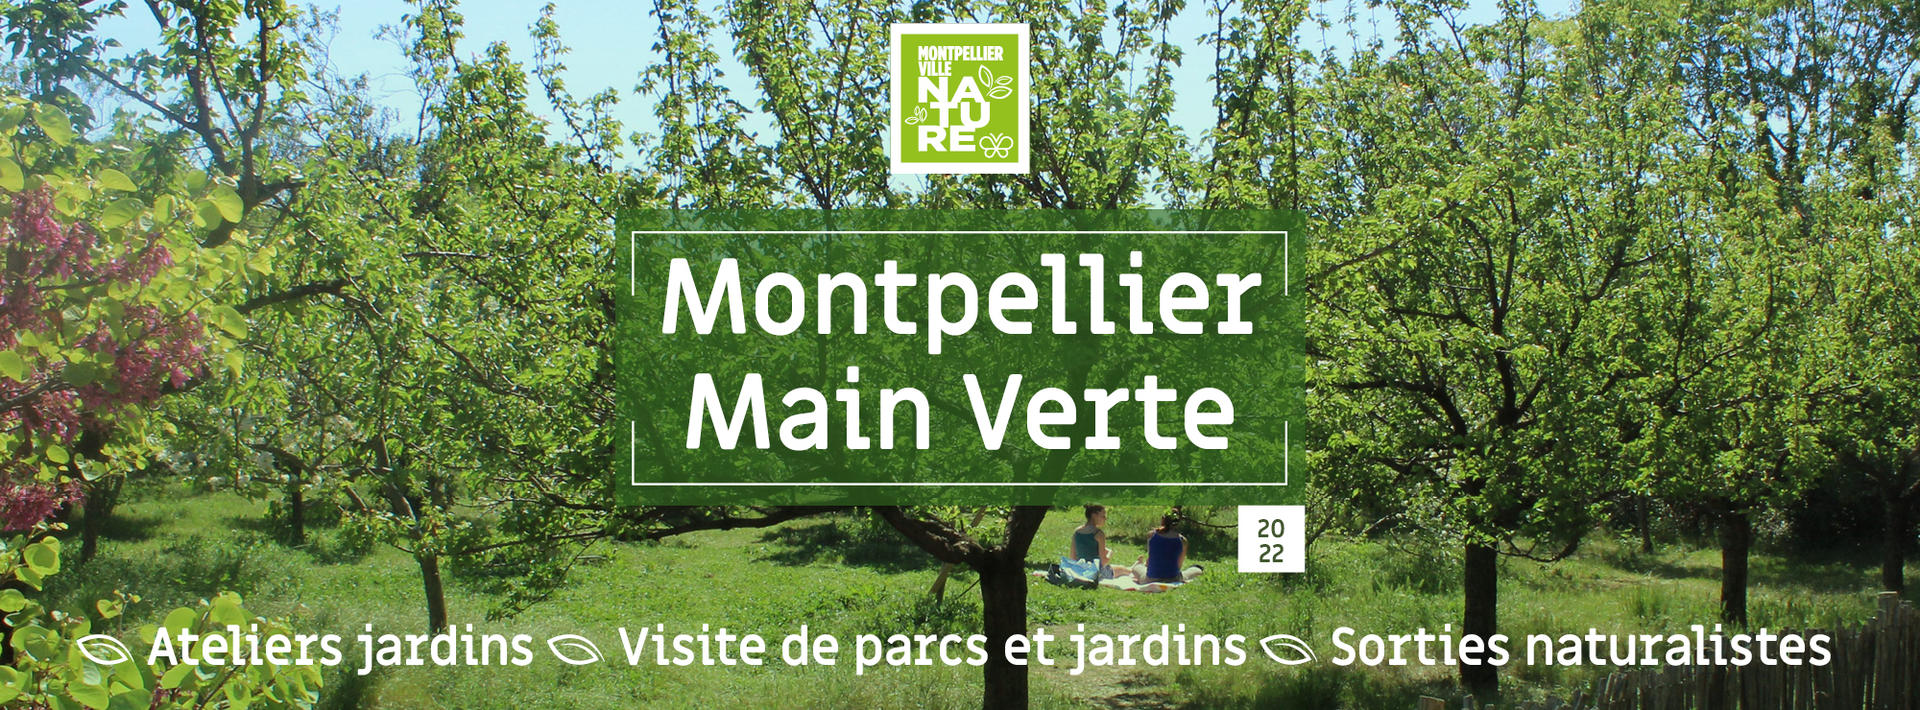 Montpellier Main Verte.jpg